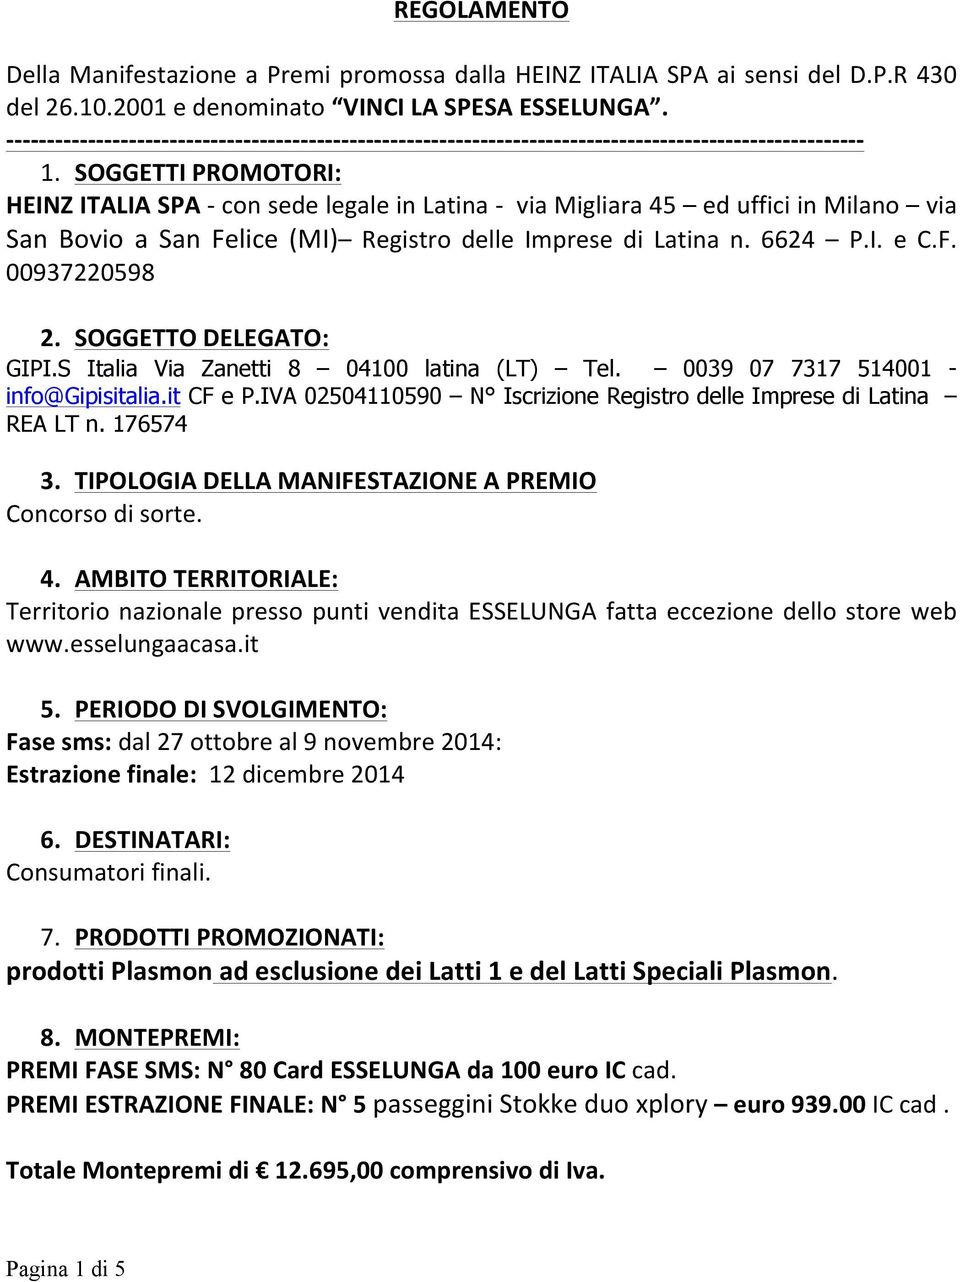 - - - - - 1. SOGGETTI PROMOTORI: HEINZ ITALIA SPA - con sede legale in Latina - via Migliara 45 ed uffici in Milano via San Bovio a San Felice (MI) Registro delle Imprese di Latina n. 6624 P.I. e C.F. 00937220598 2.